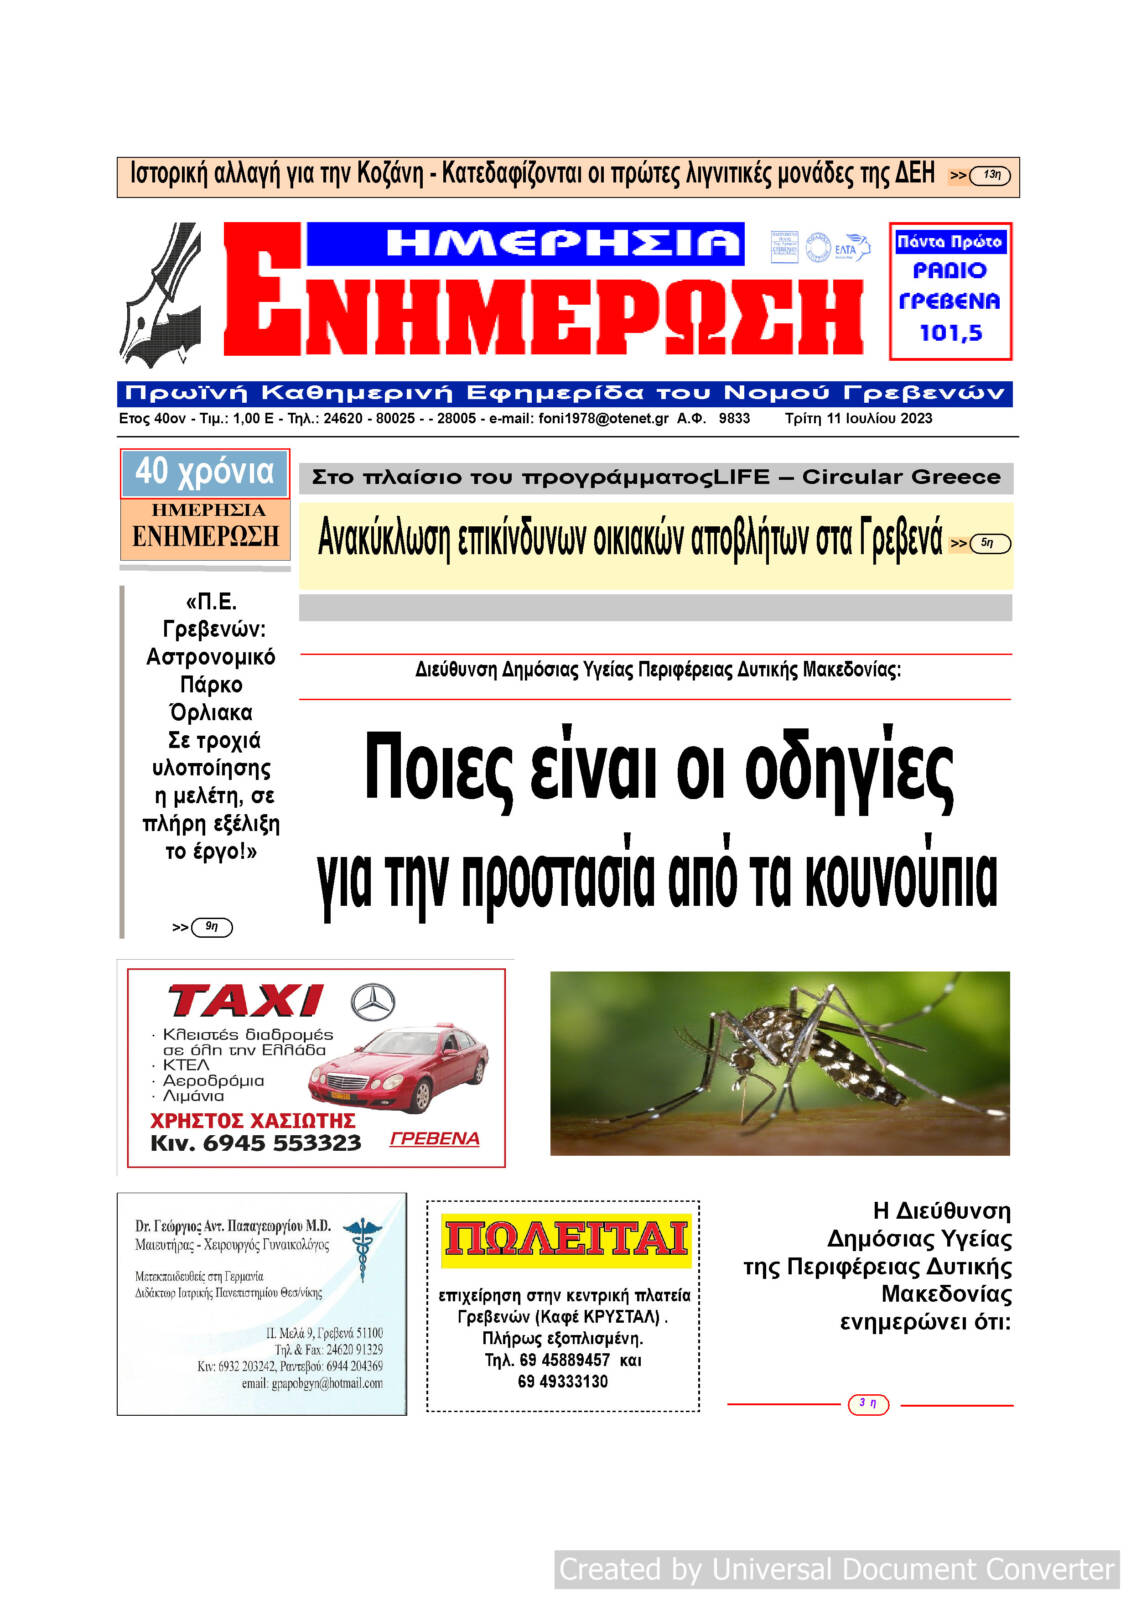 Τρίτη 11 Ιουλίου: Η πρώτη σελίδα της Καθημερινής Εφημερίδας “ΗΜΕΡΗΣΙΑ ΕΝΗΜΕΡΩΣΗ” Γρεβενών